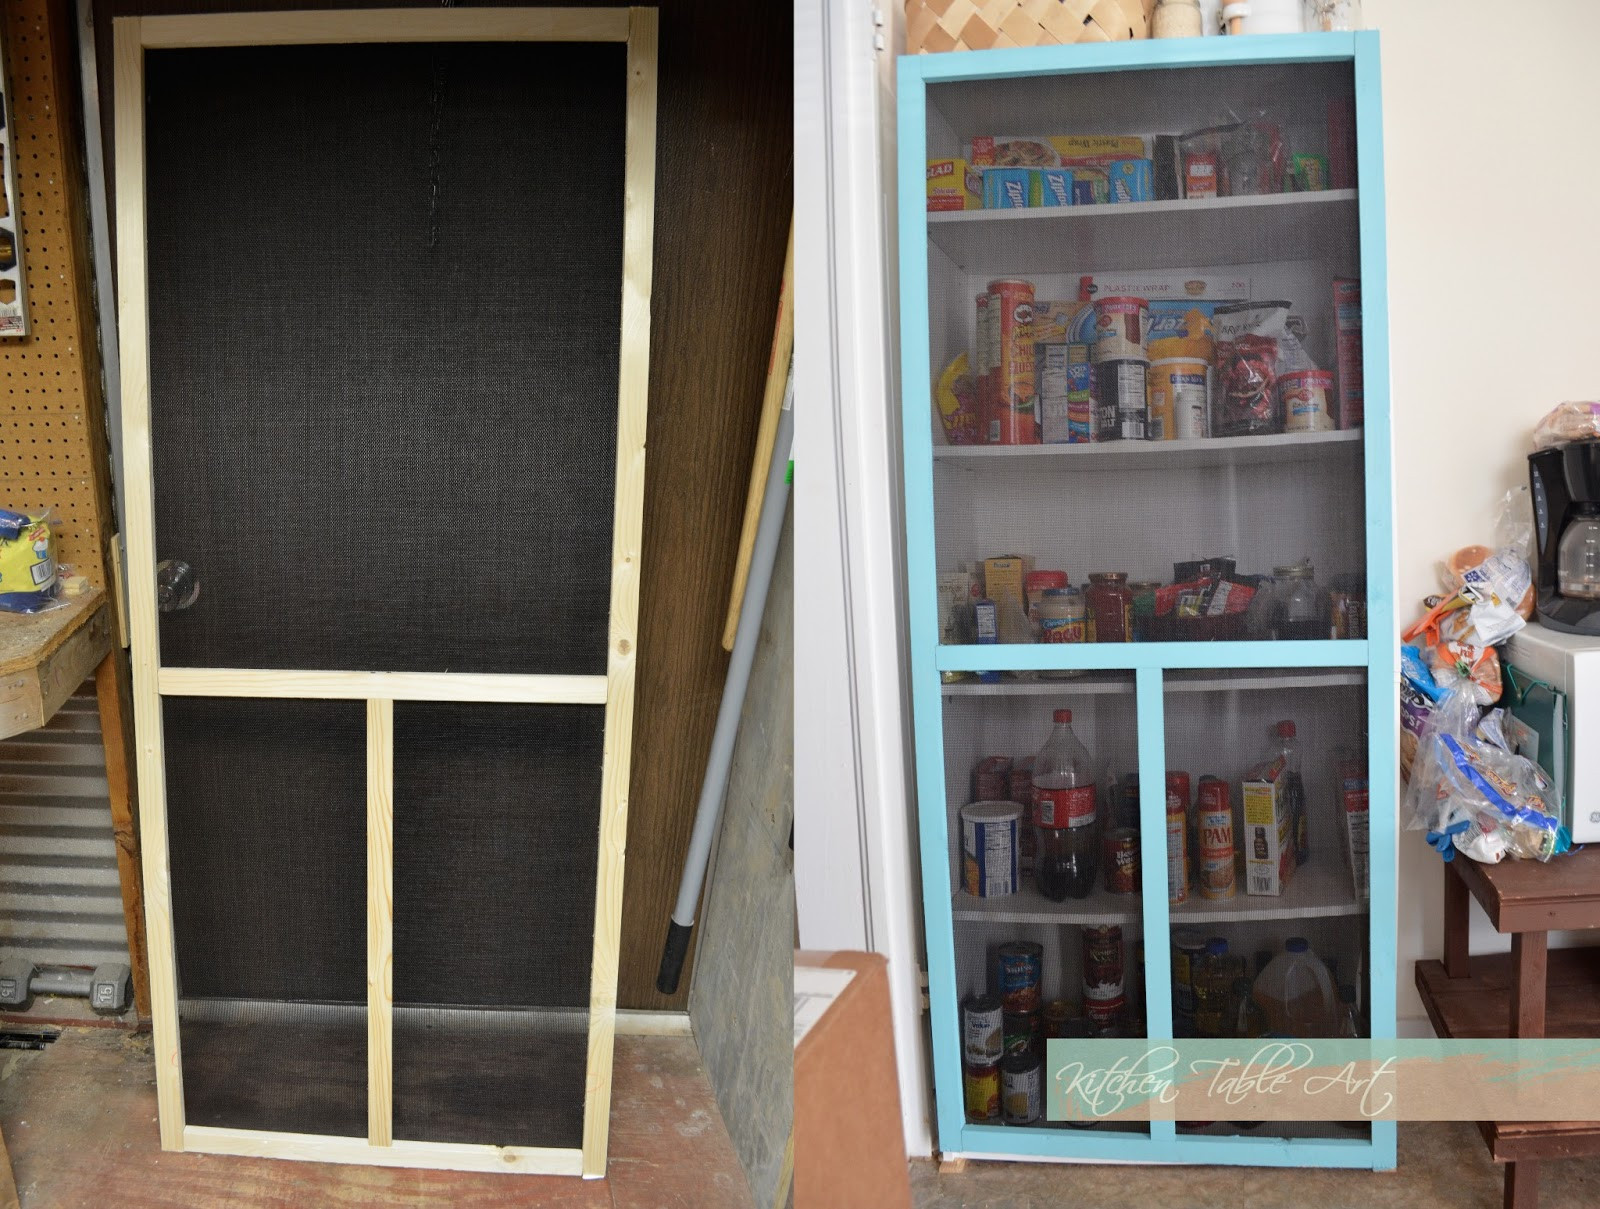 Best ideas about DIY Screen Door
. Save or Pin Grace Langdon Art DIY Screen Door Now.